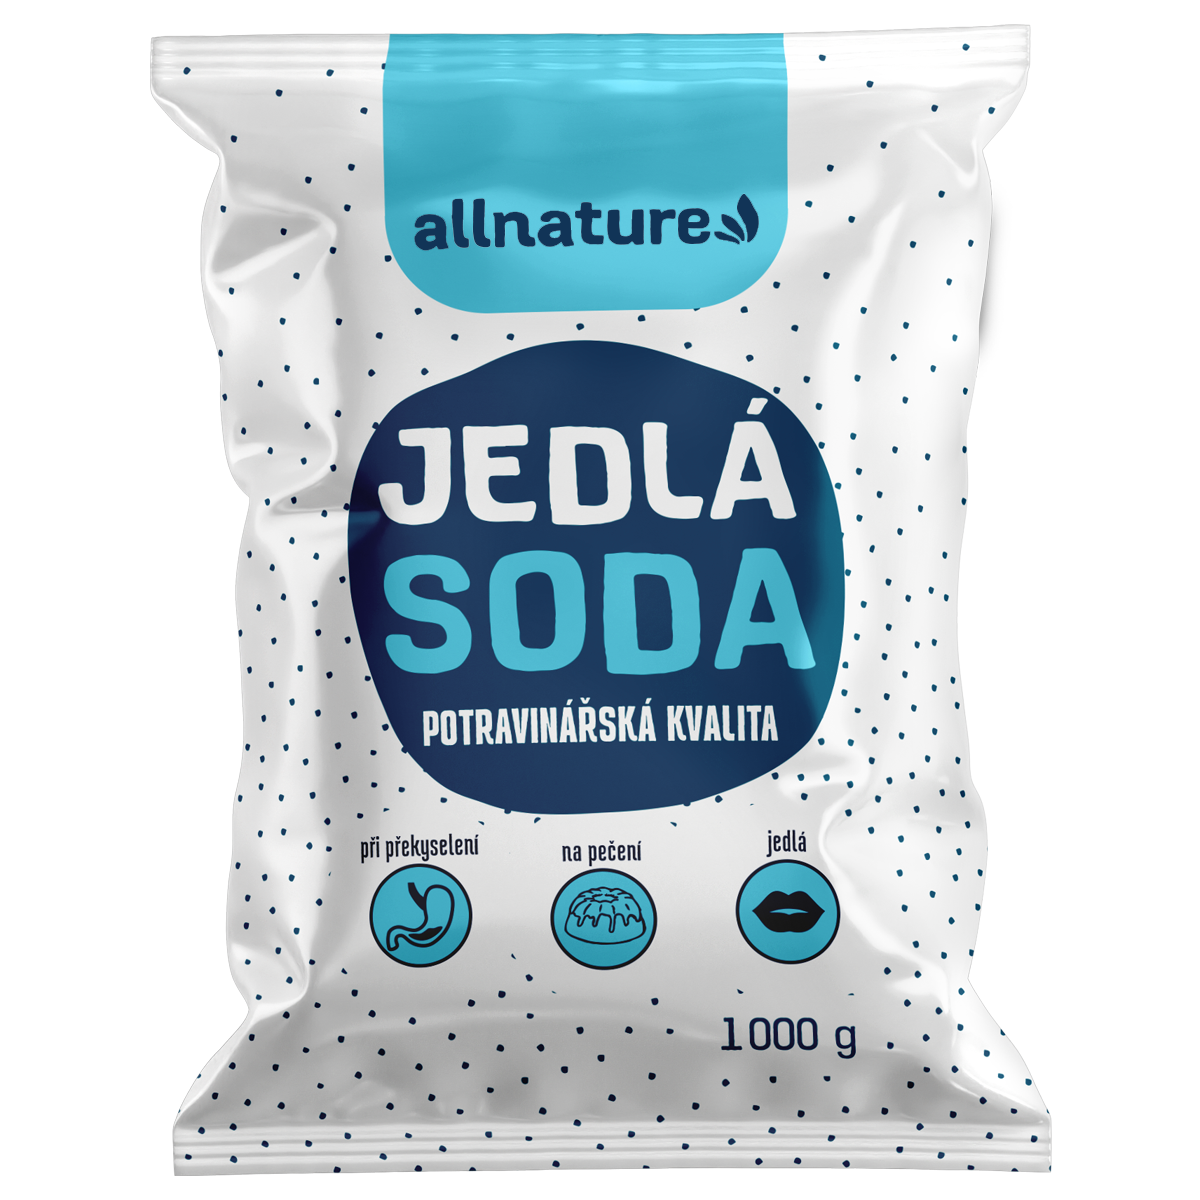 Allnature Jedlá soda - 1 kg - potravinářská kvalita